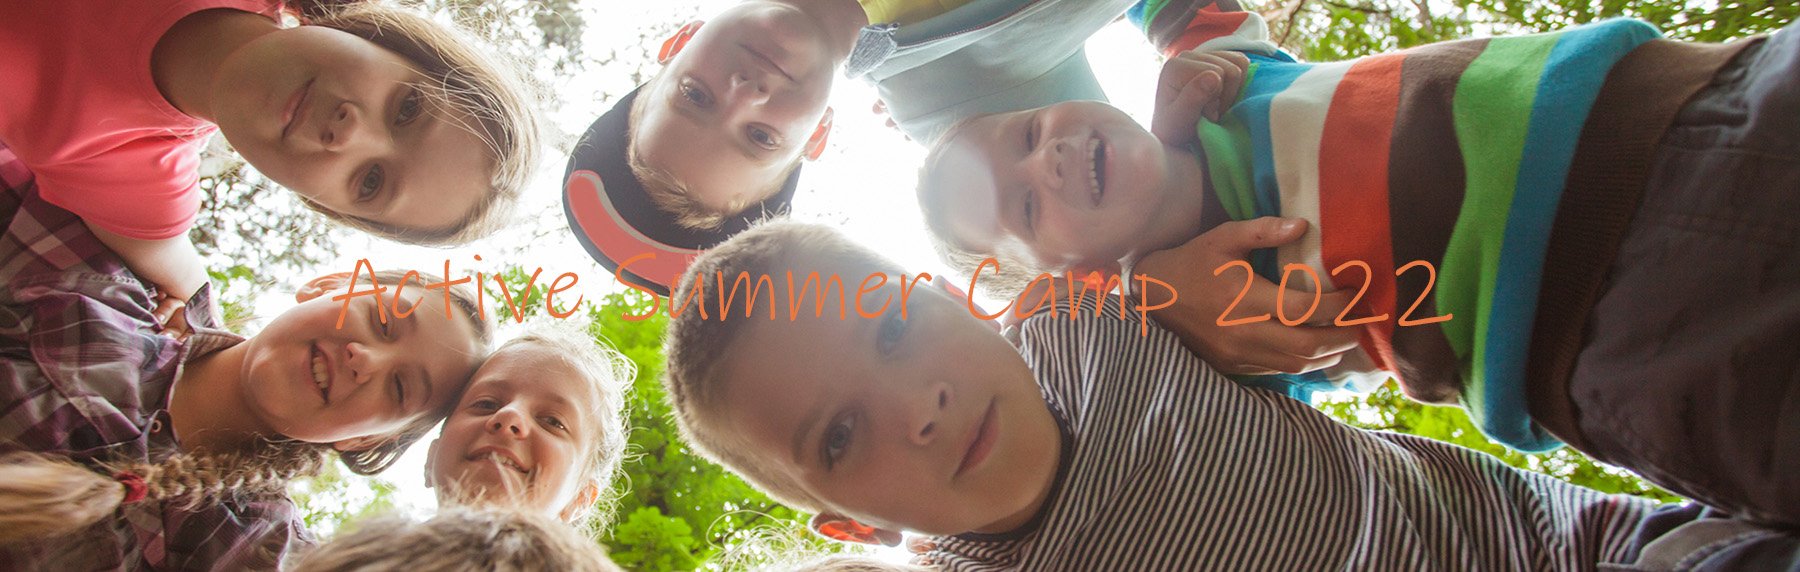 Active Babies and Kids Summer Camp στον Κήπο logo